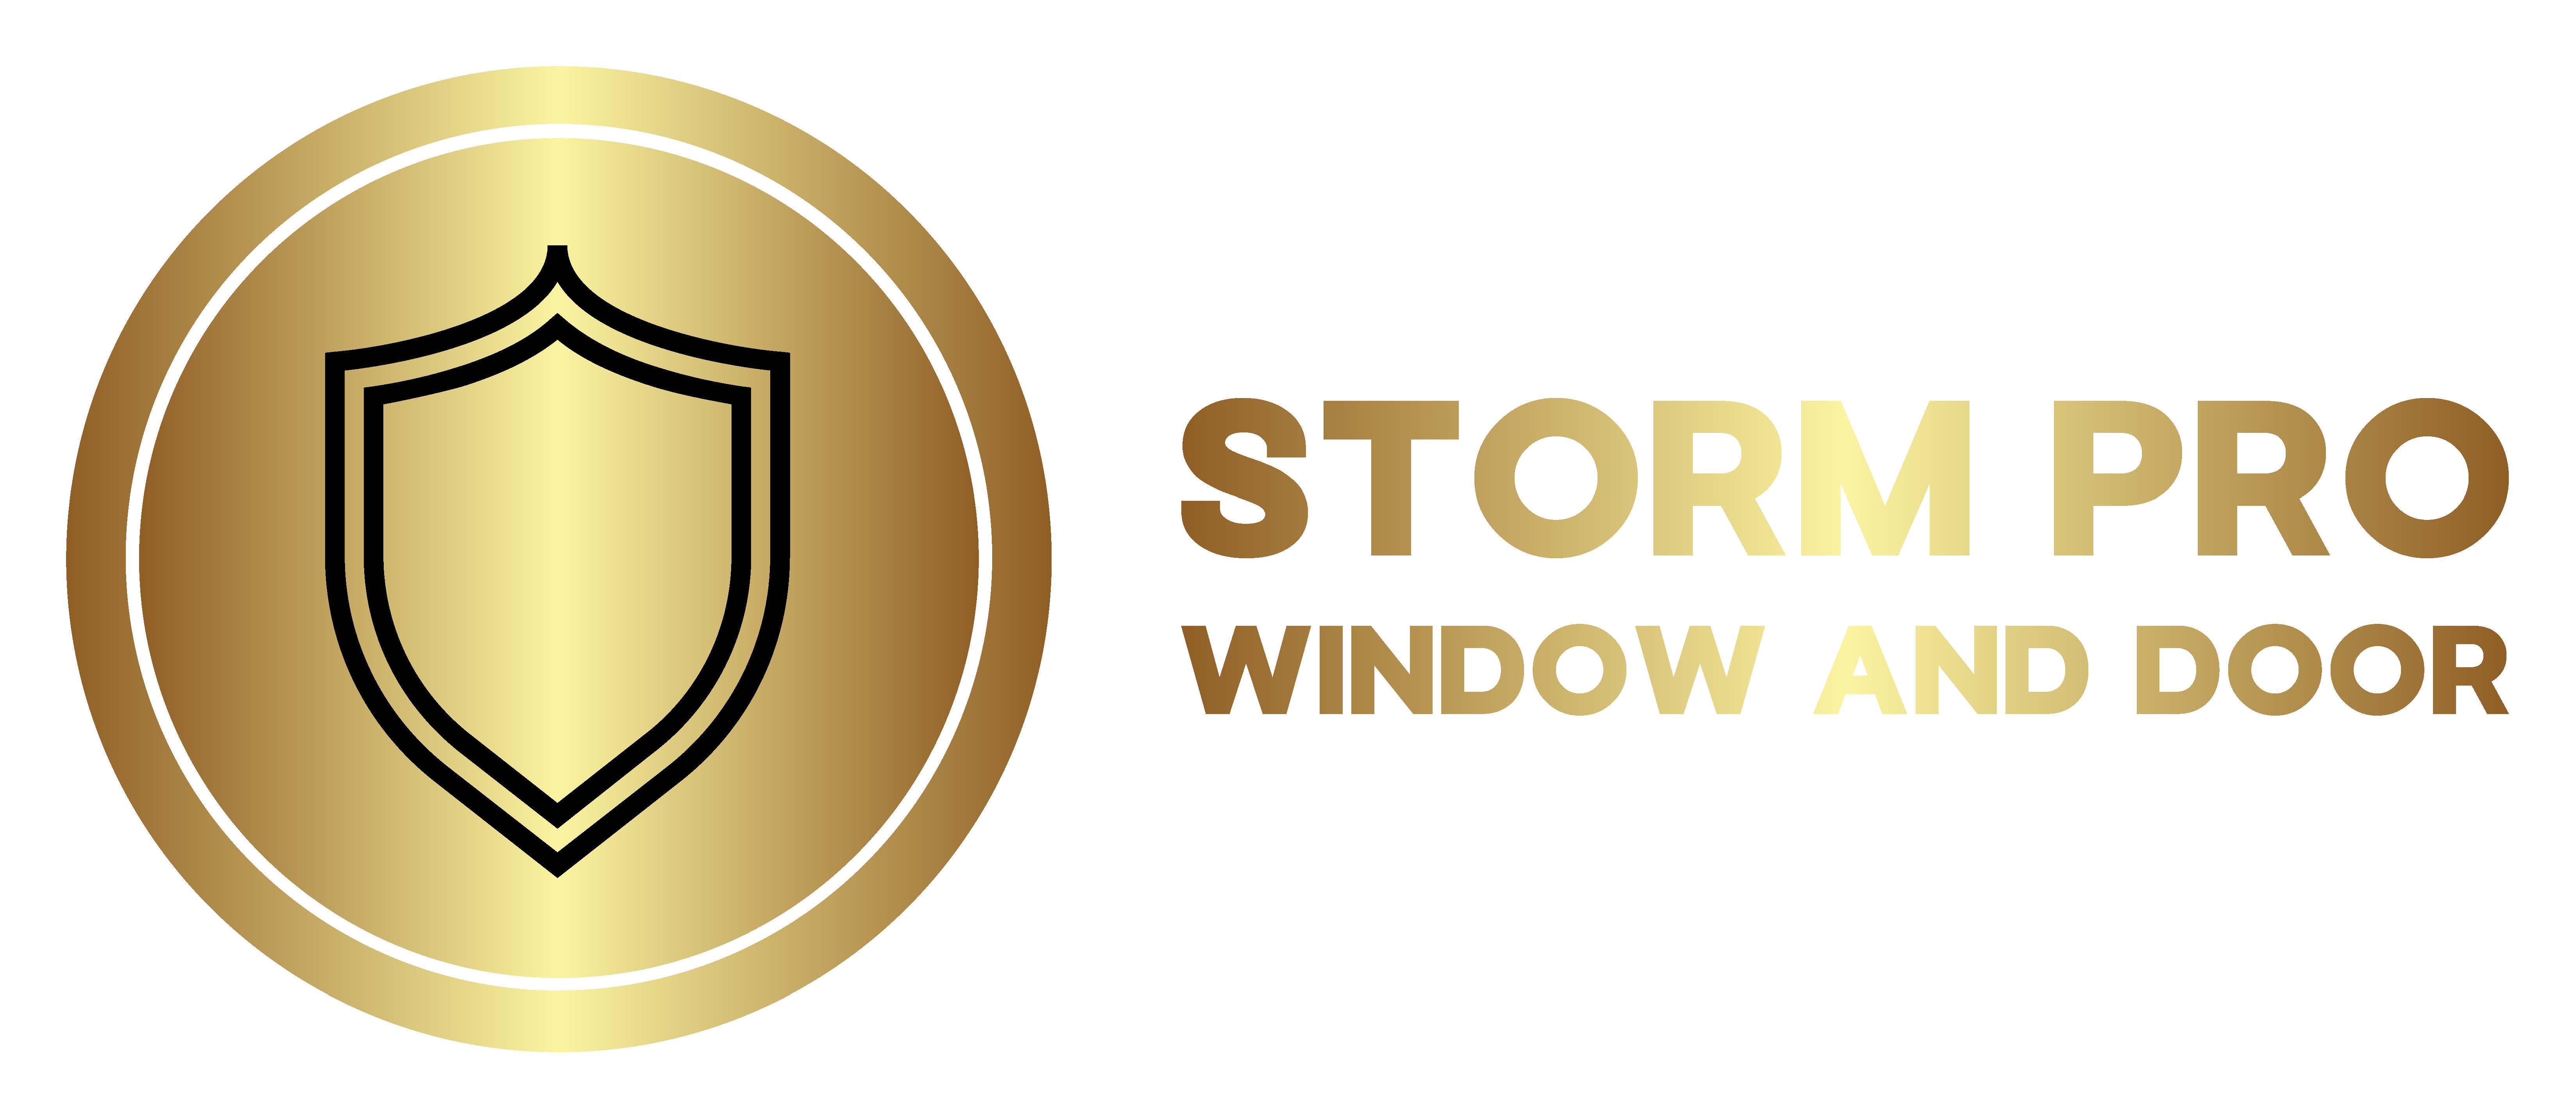 Storm Pro Window and Door Logo